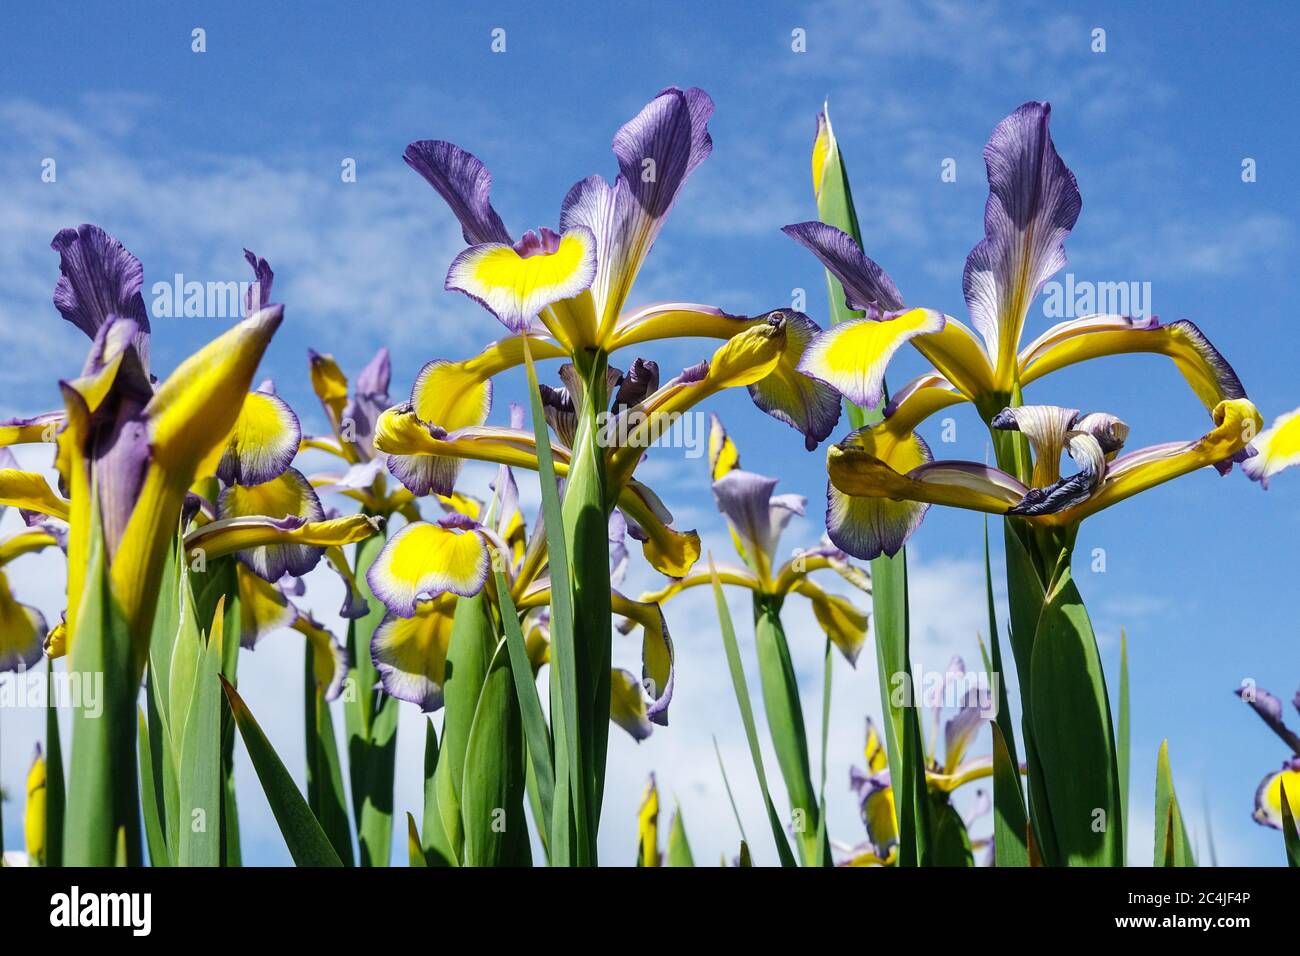 Blumen Himmel Iris gegen blauen Himmel Iris blau gelb Pflanzen Hintergrund, Sommer Blume Natur Himmel schöne Iris blüht Iris spuria Stockfoto